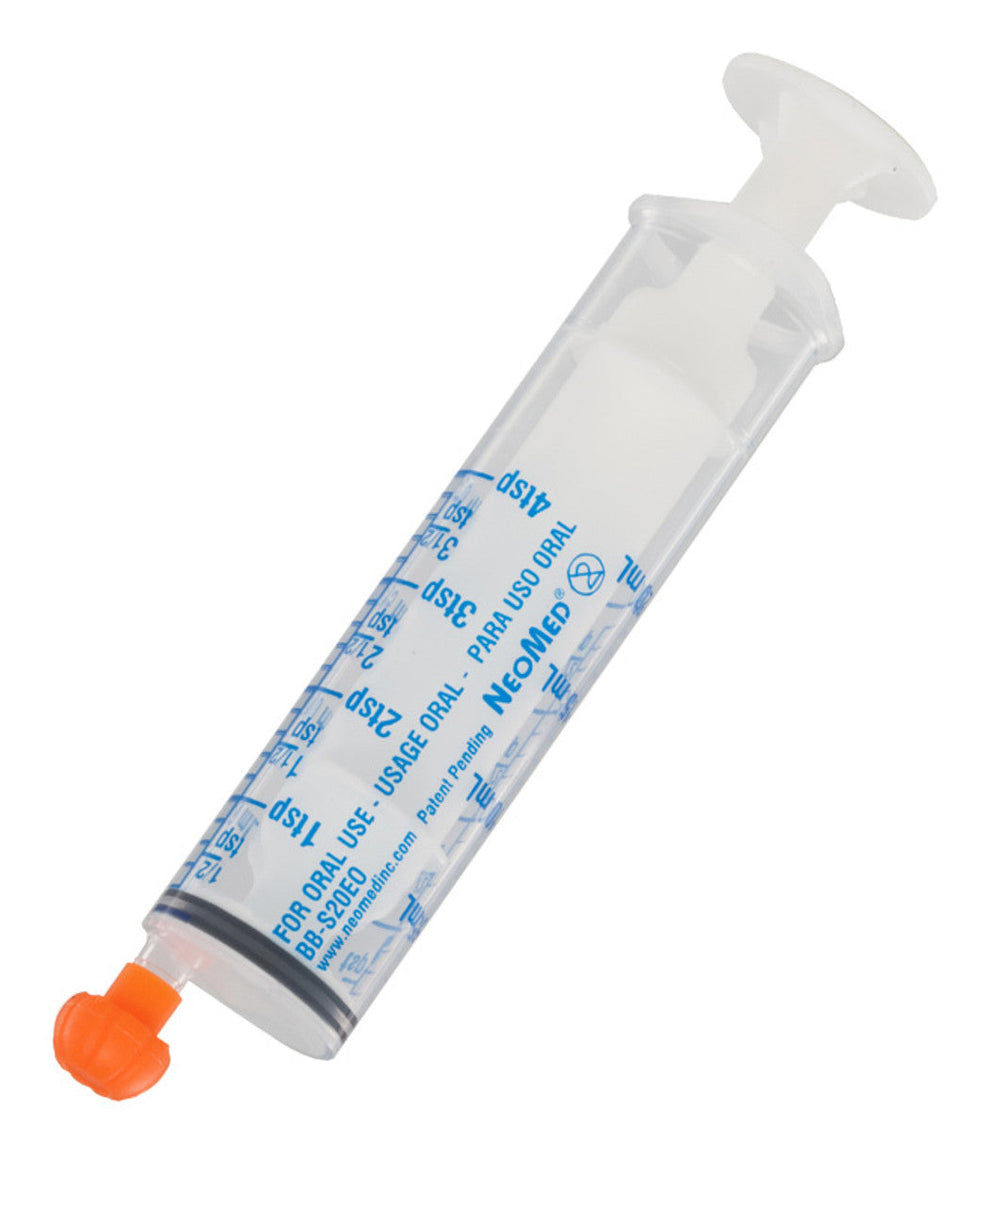 NeoMed 20mL Oral Medication Syringe with Blue Gradients - Pack of 25 Syringes